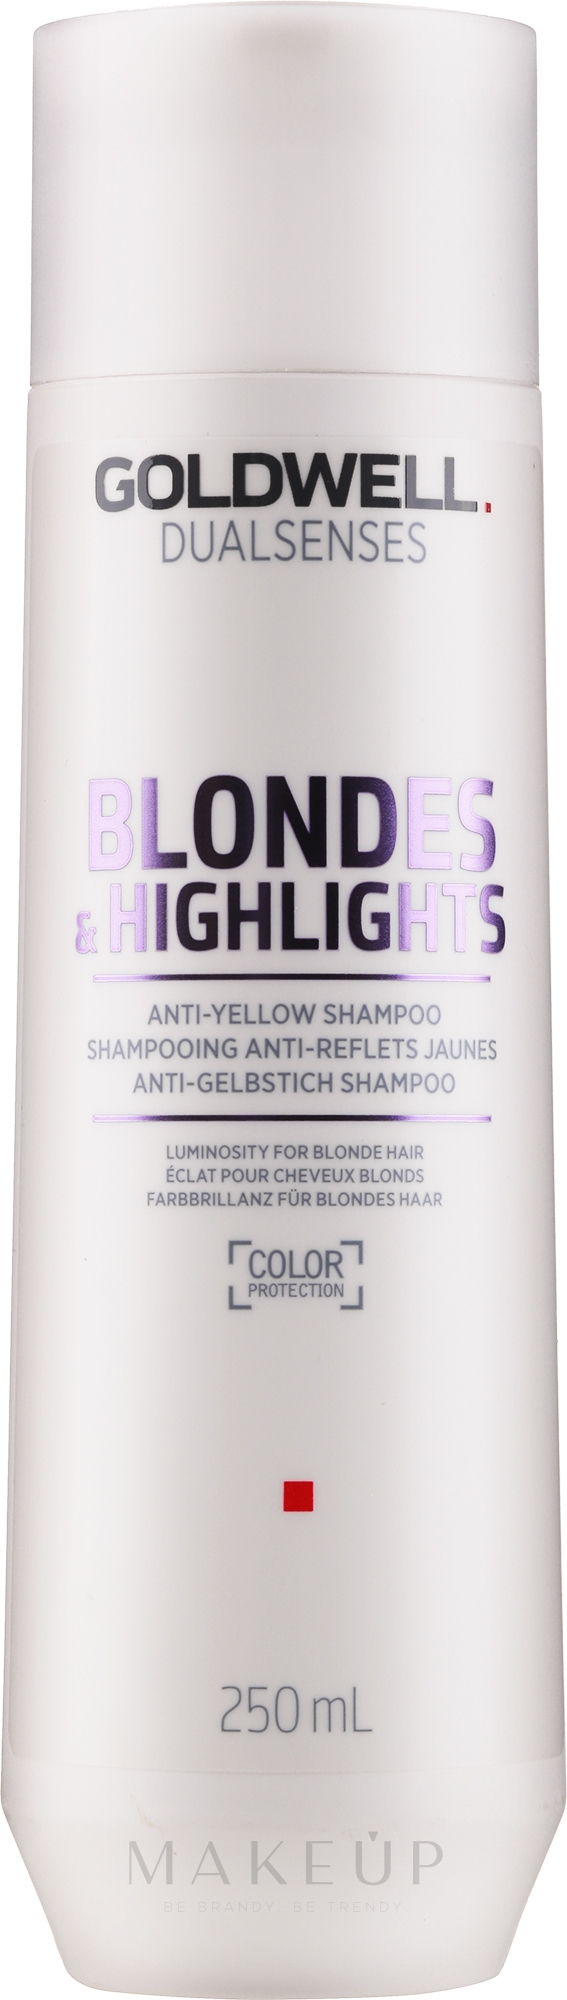 Anti-Gelbstich Shampoo für blondes und gesträhntes Haar - Goldwell Dualsenses Blondes & Highlights Anti-Yellow Shampoo — Bild 250 ml